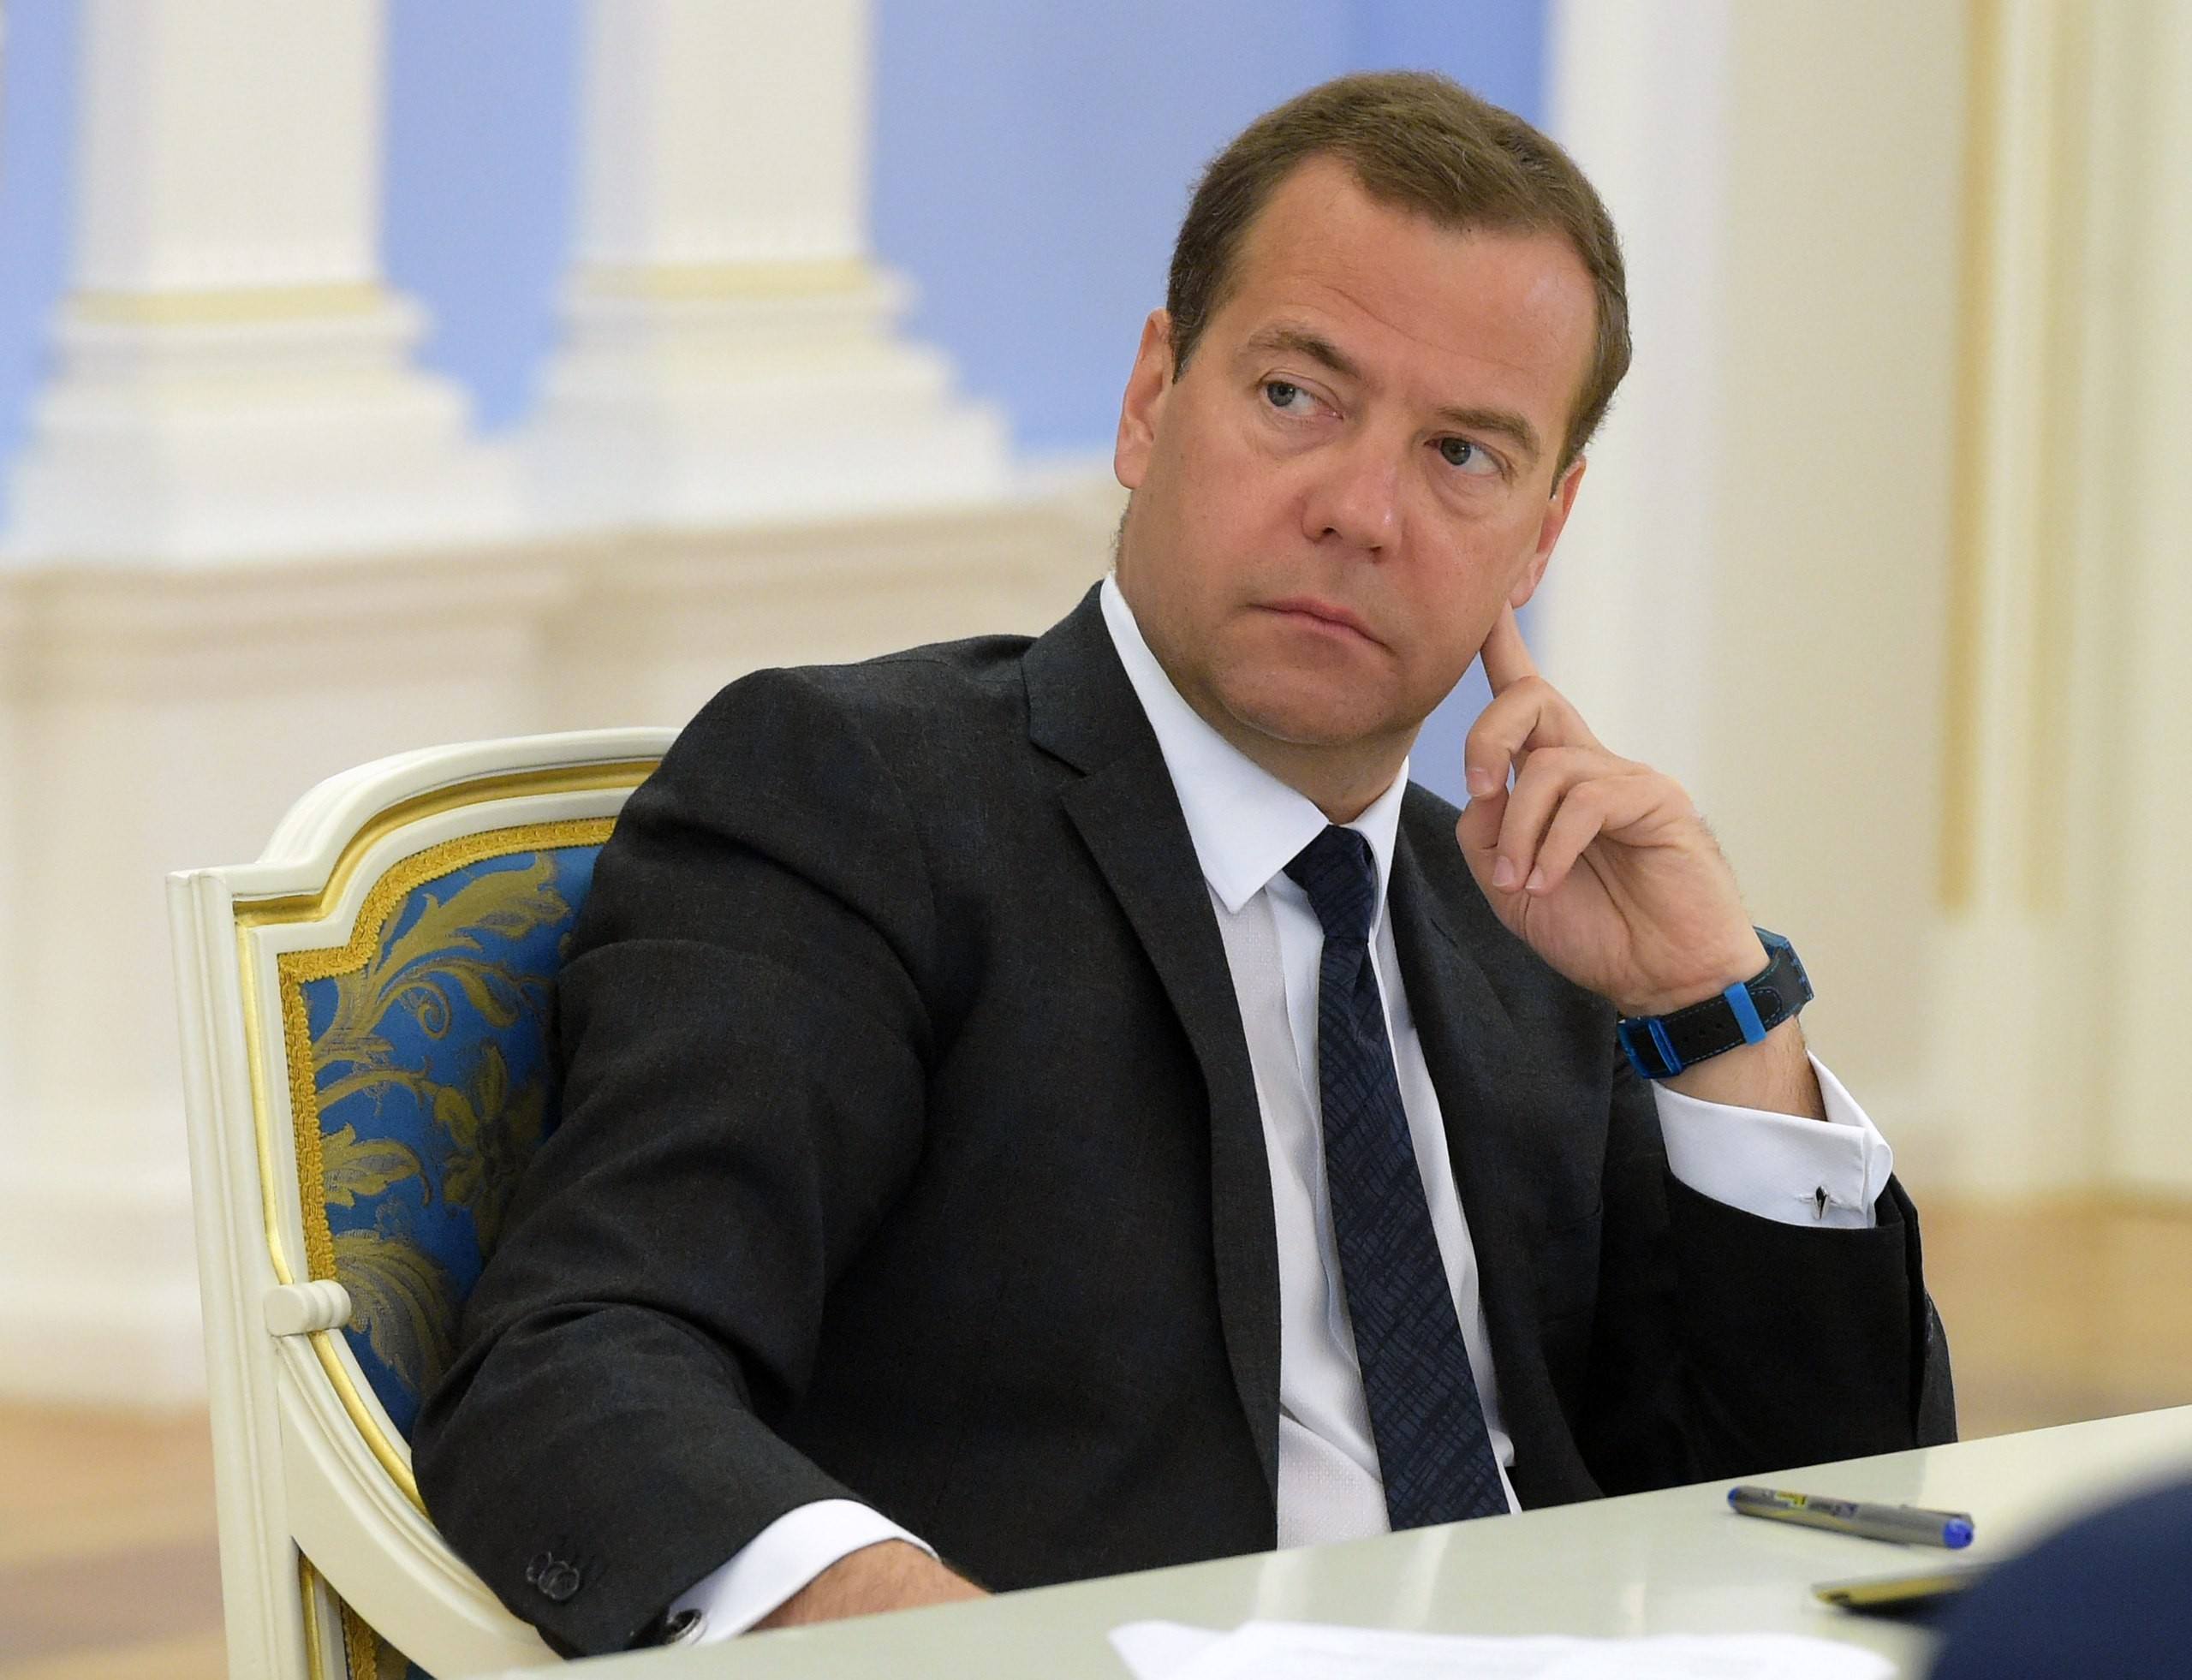 Сын премьер министра. Дмитриев Медведев.